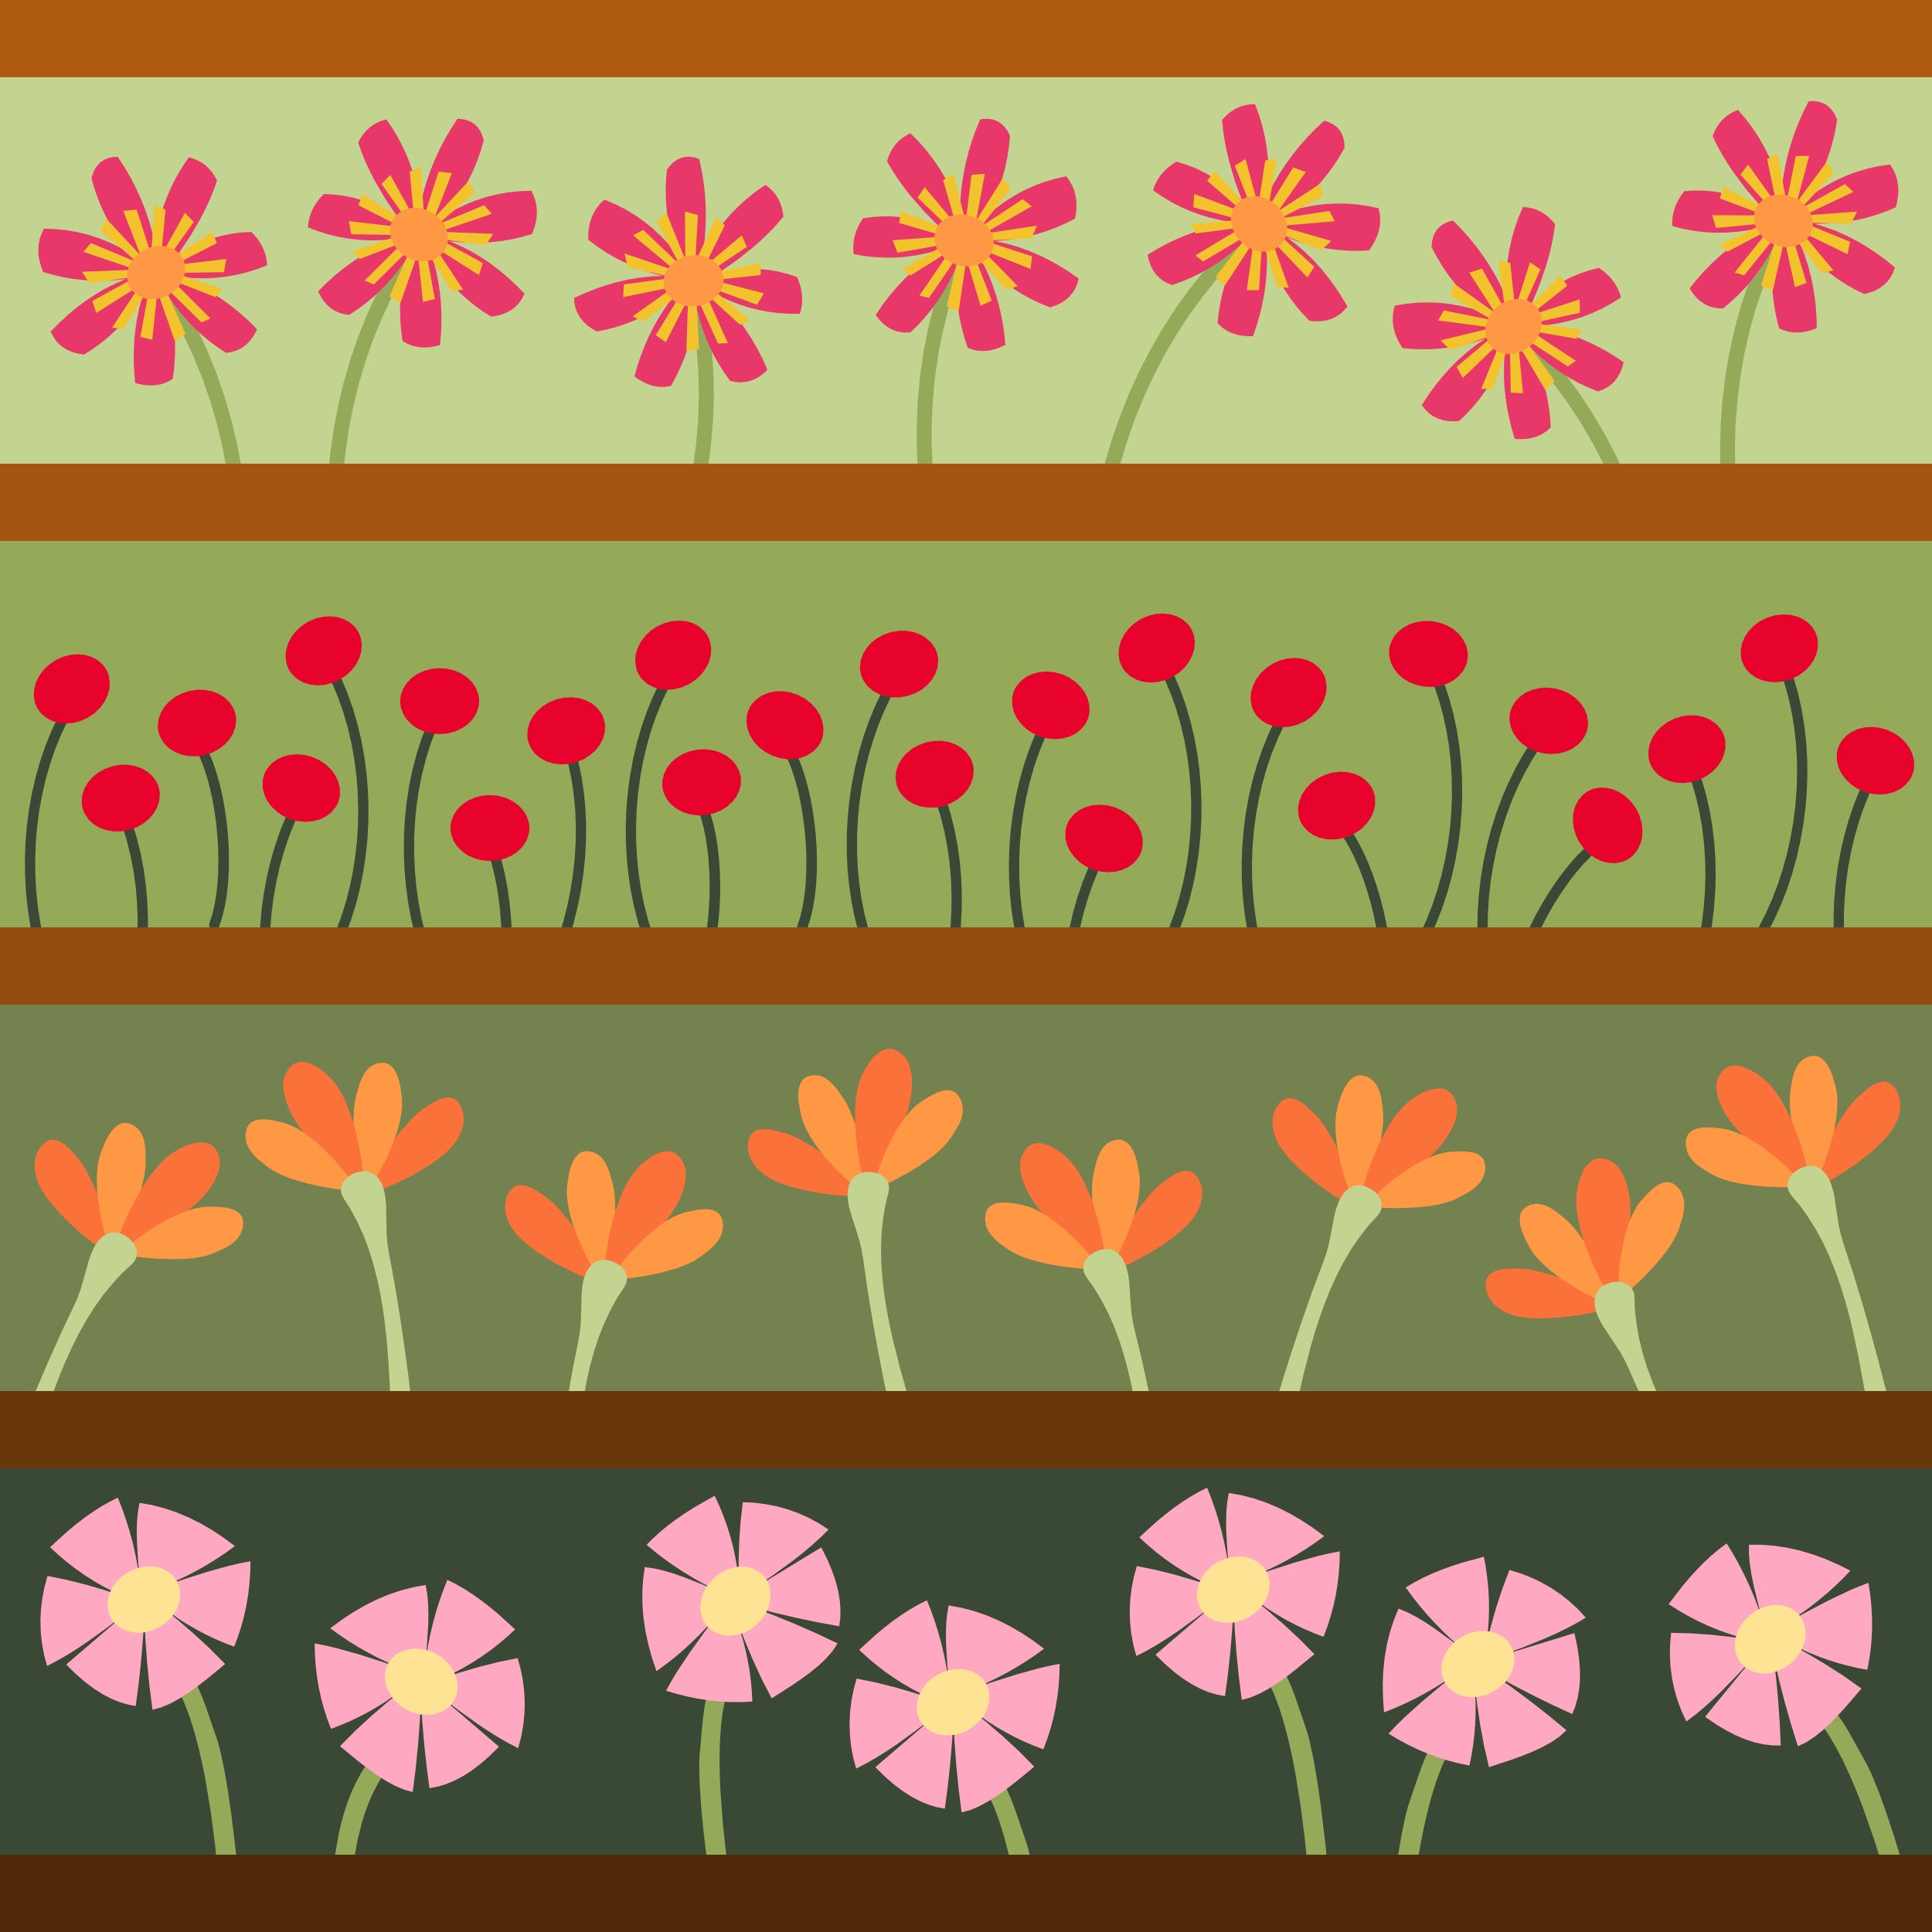 Wild Flowers - applique quilt pattern workshop